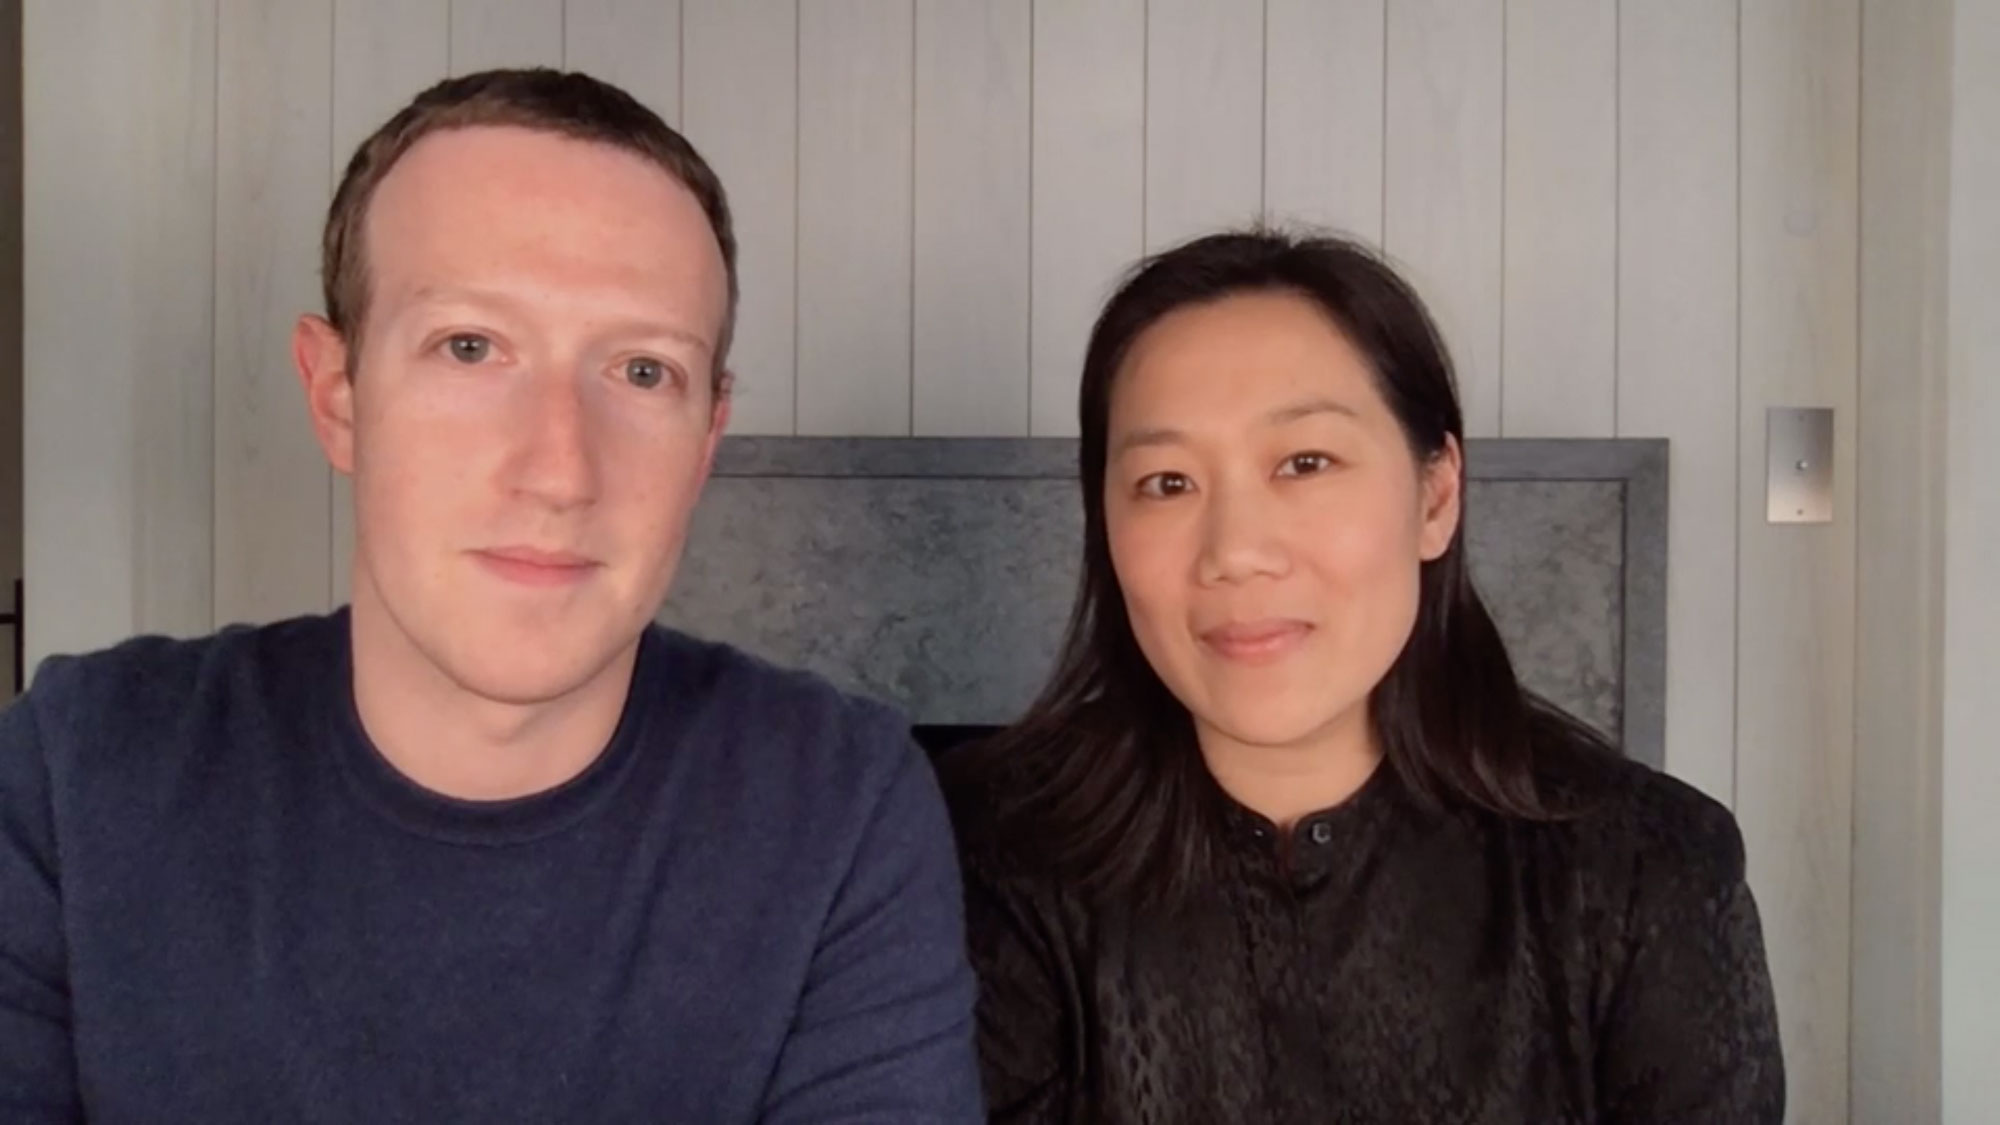 Mark Zuckerberg and Dr. Priscilla Chan